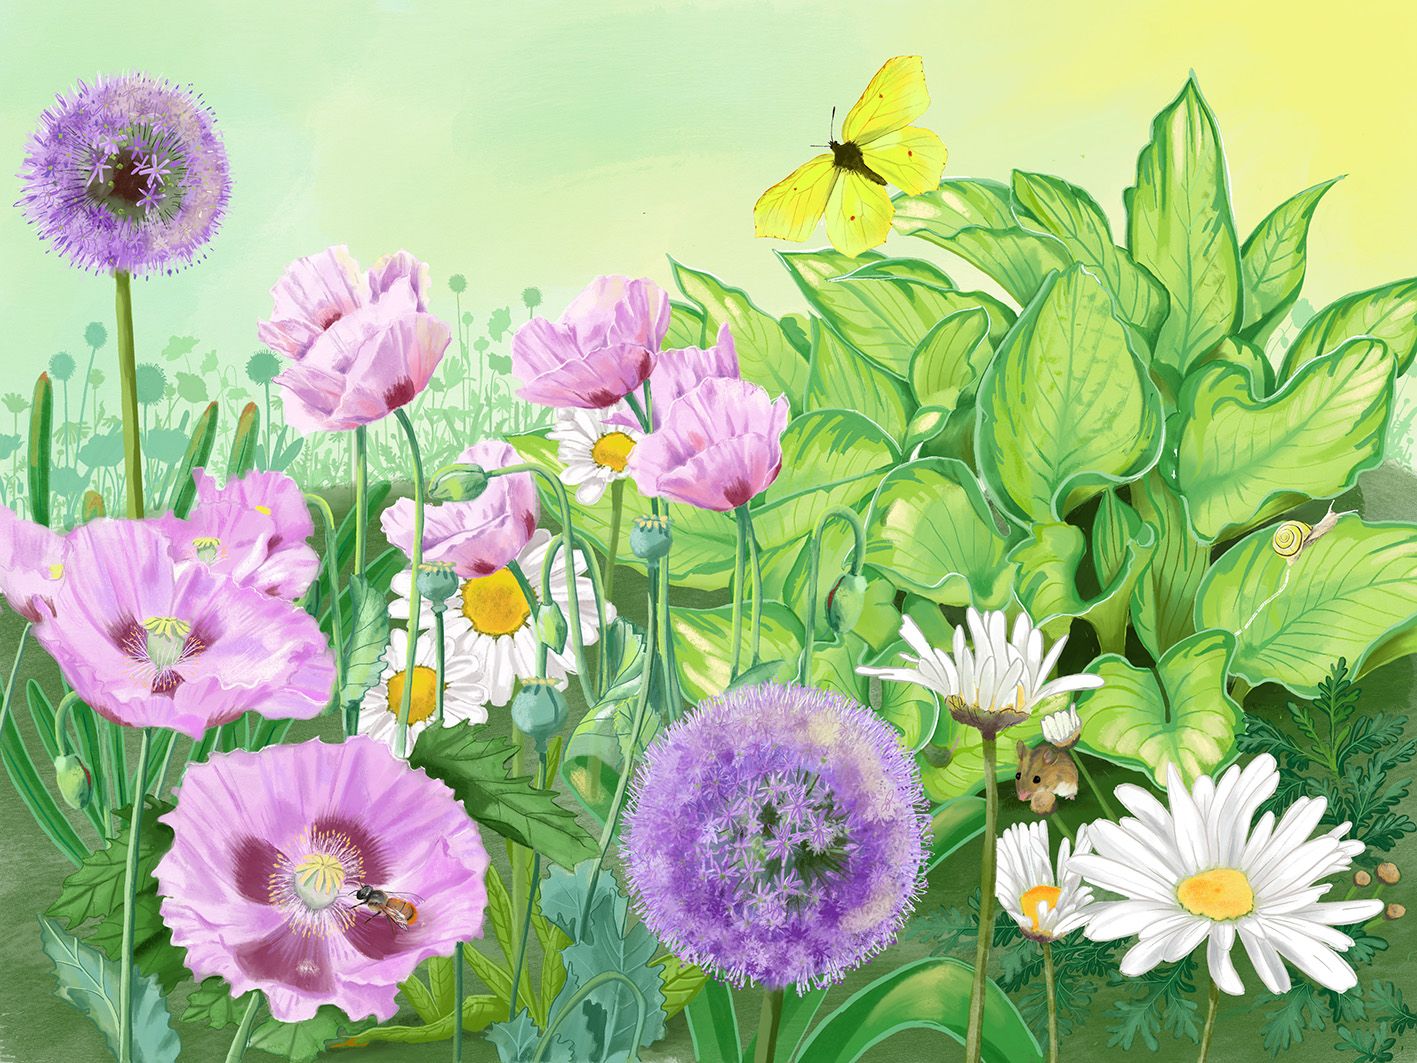 ein Blumenbeet mit Mohn, Lauch, Margariten, Schmetterling